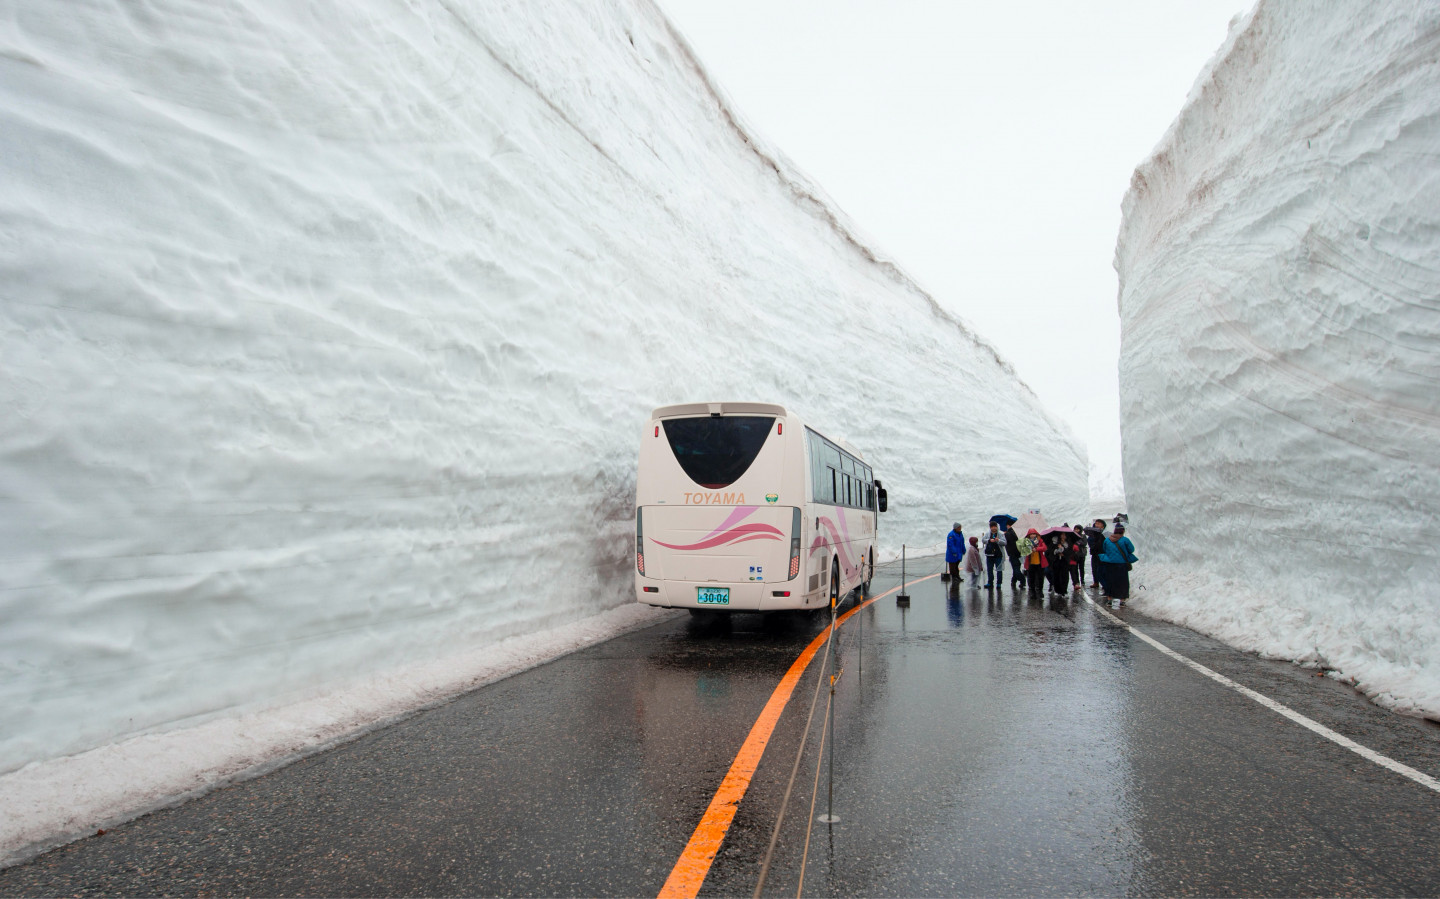 Сніговий коридор Муродо на висоті 2450 метрів над морем.